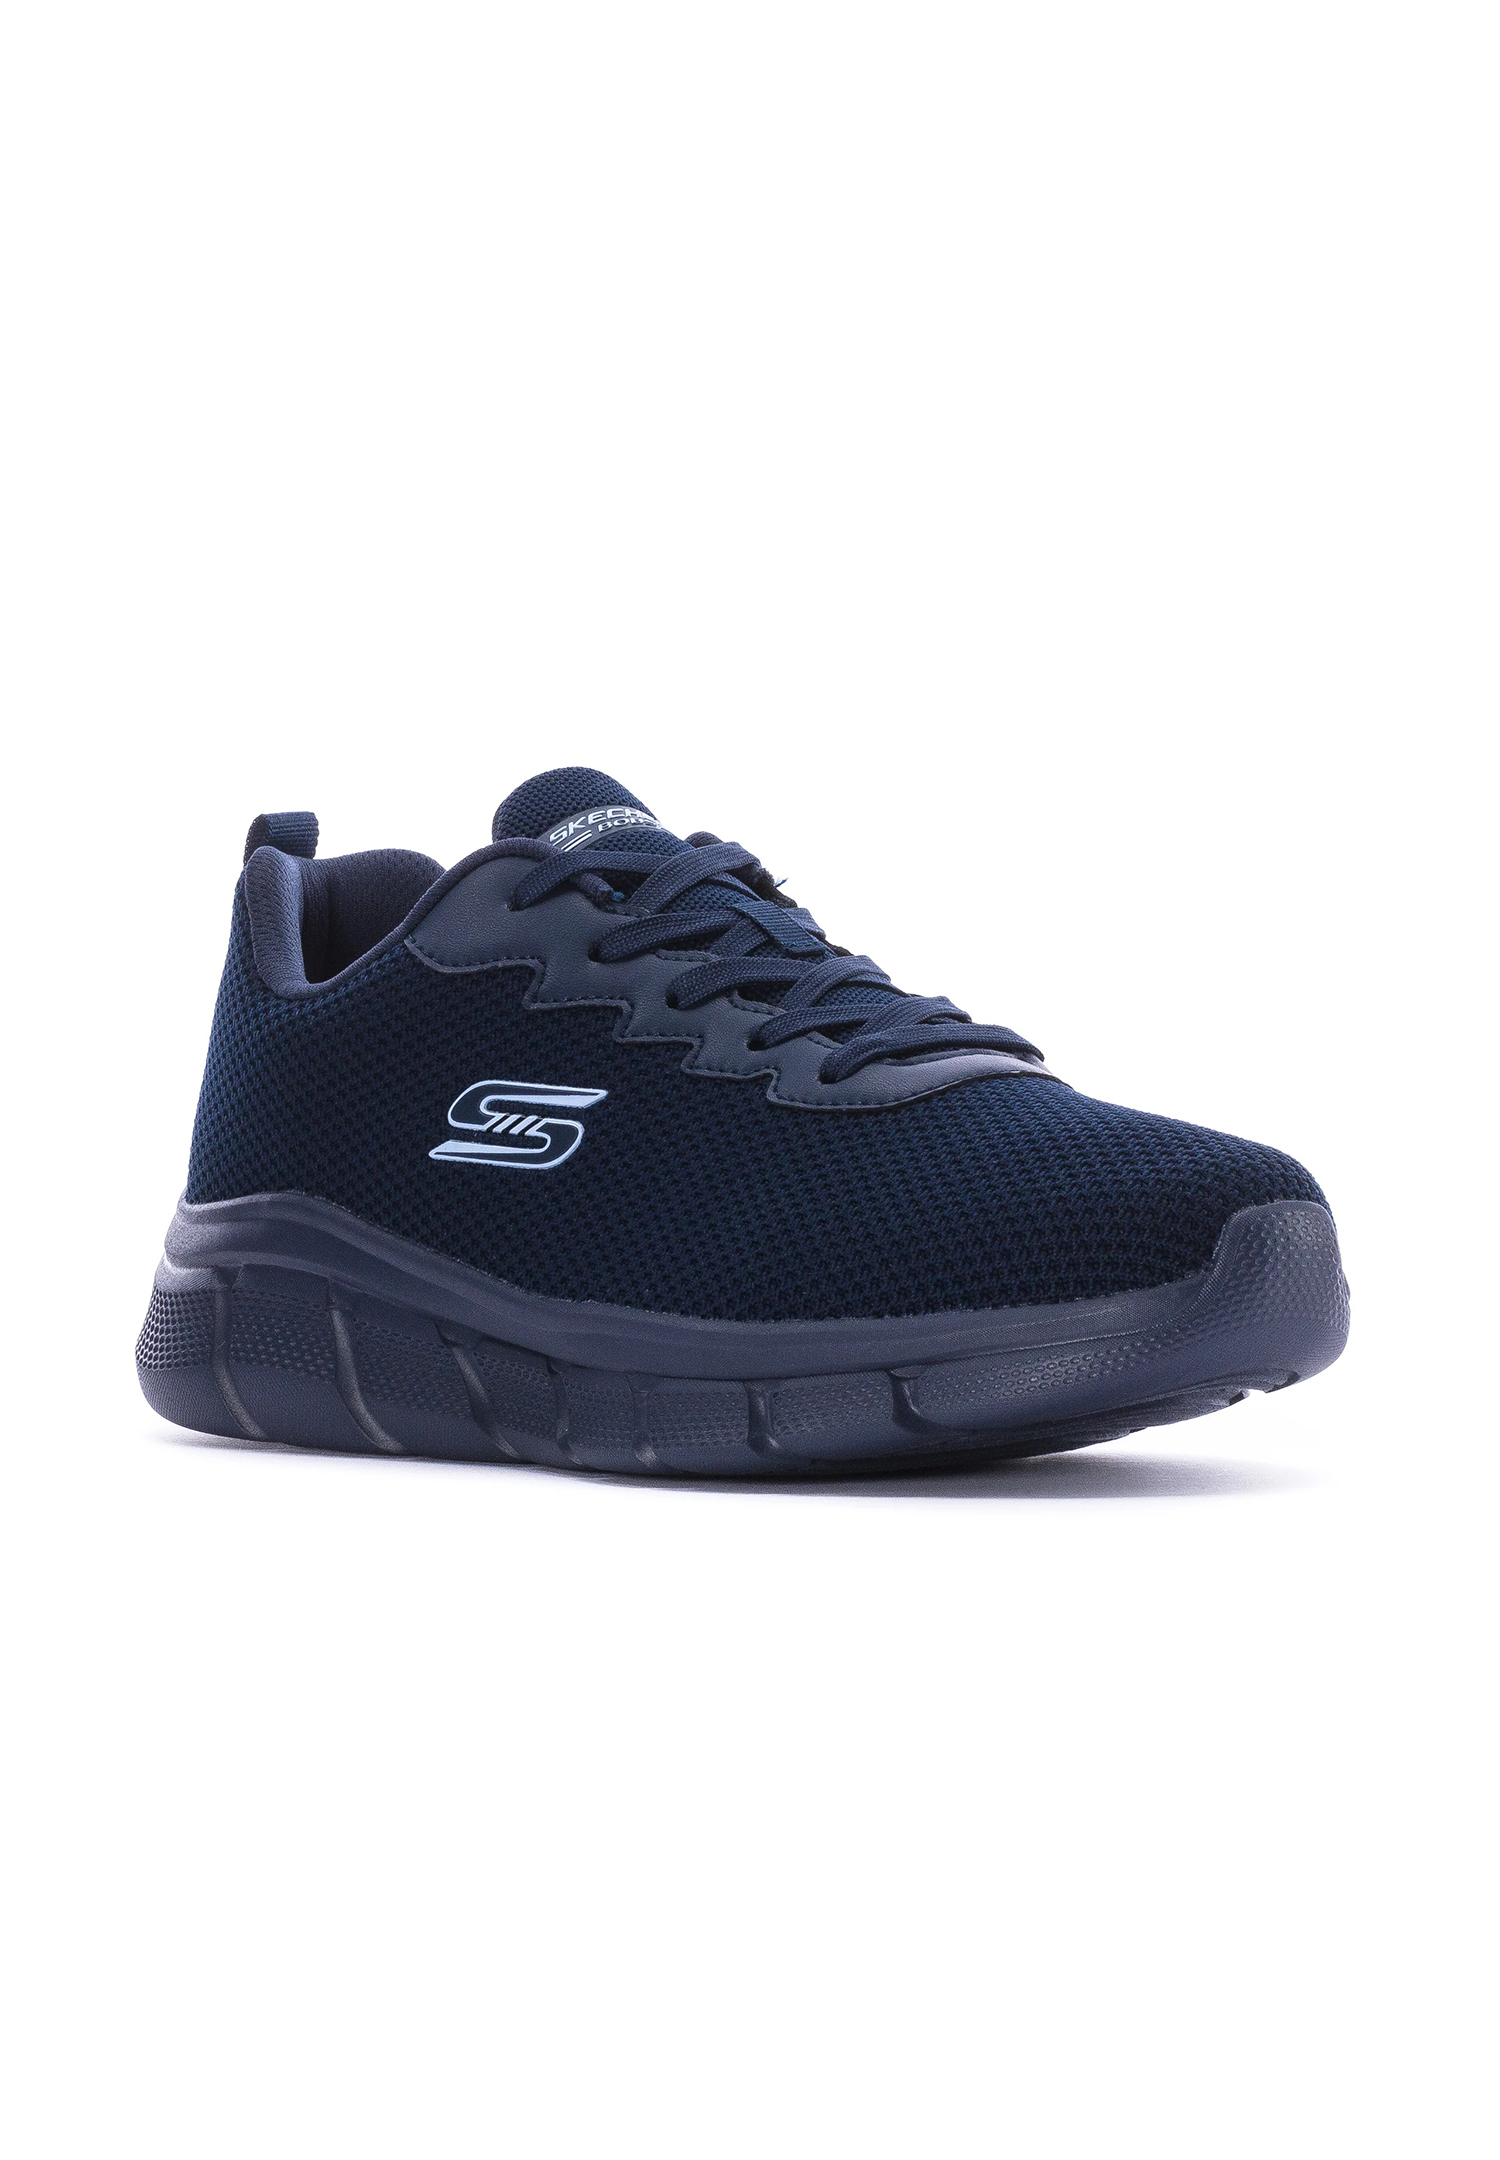 Skechers BOBS Sport B Flex - Chill Edge Herren Sneaker 118106 NVY navy